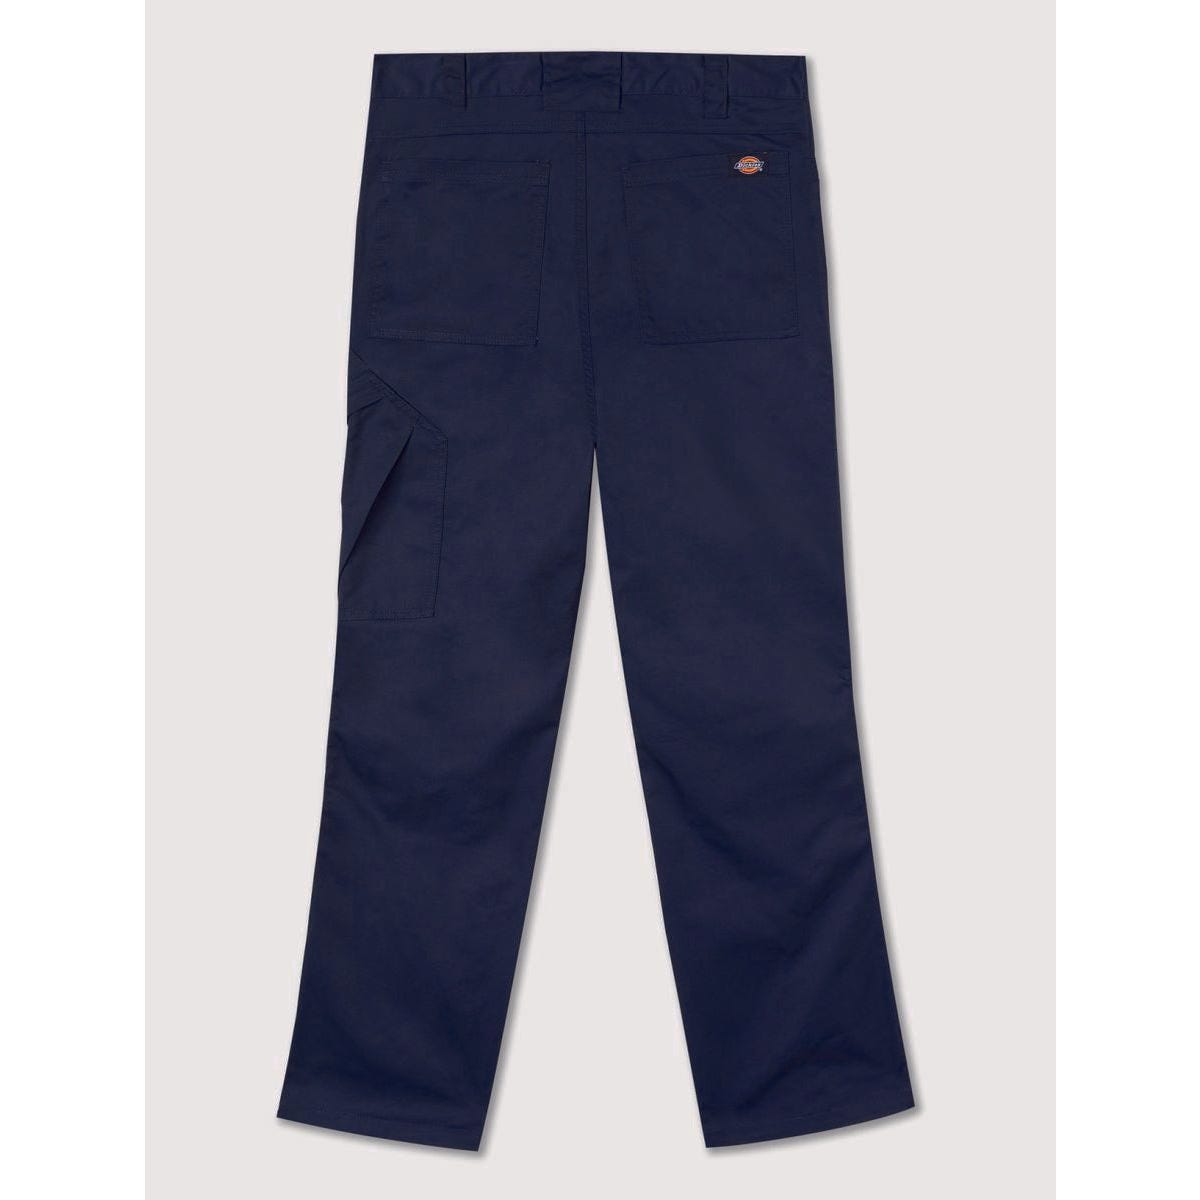 Pantalon de travail Action Flex gris - Dickies - Taille 52 6